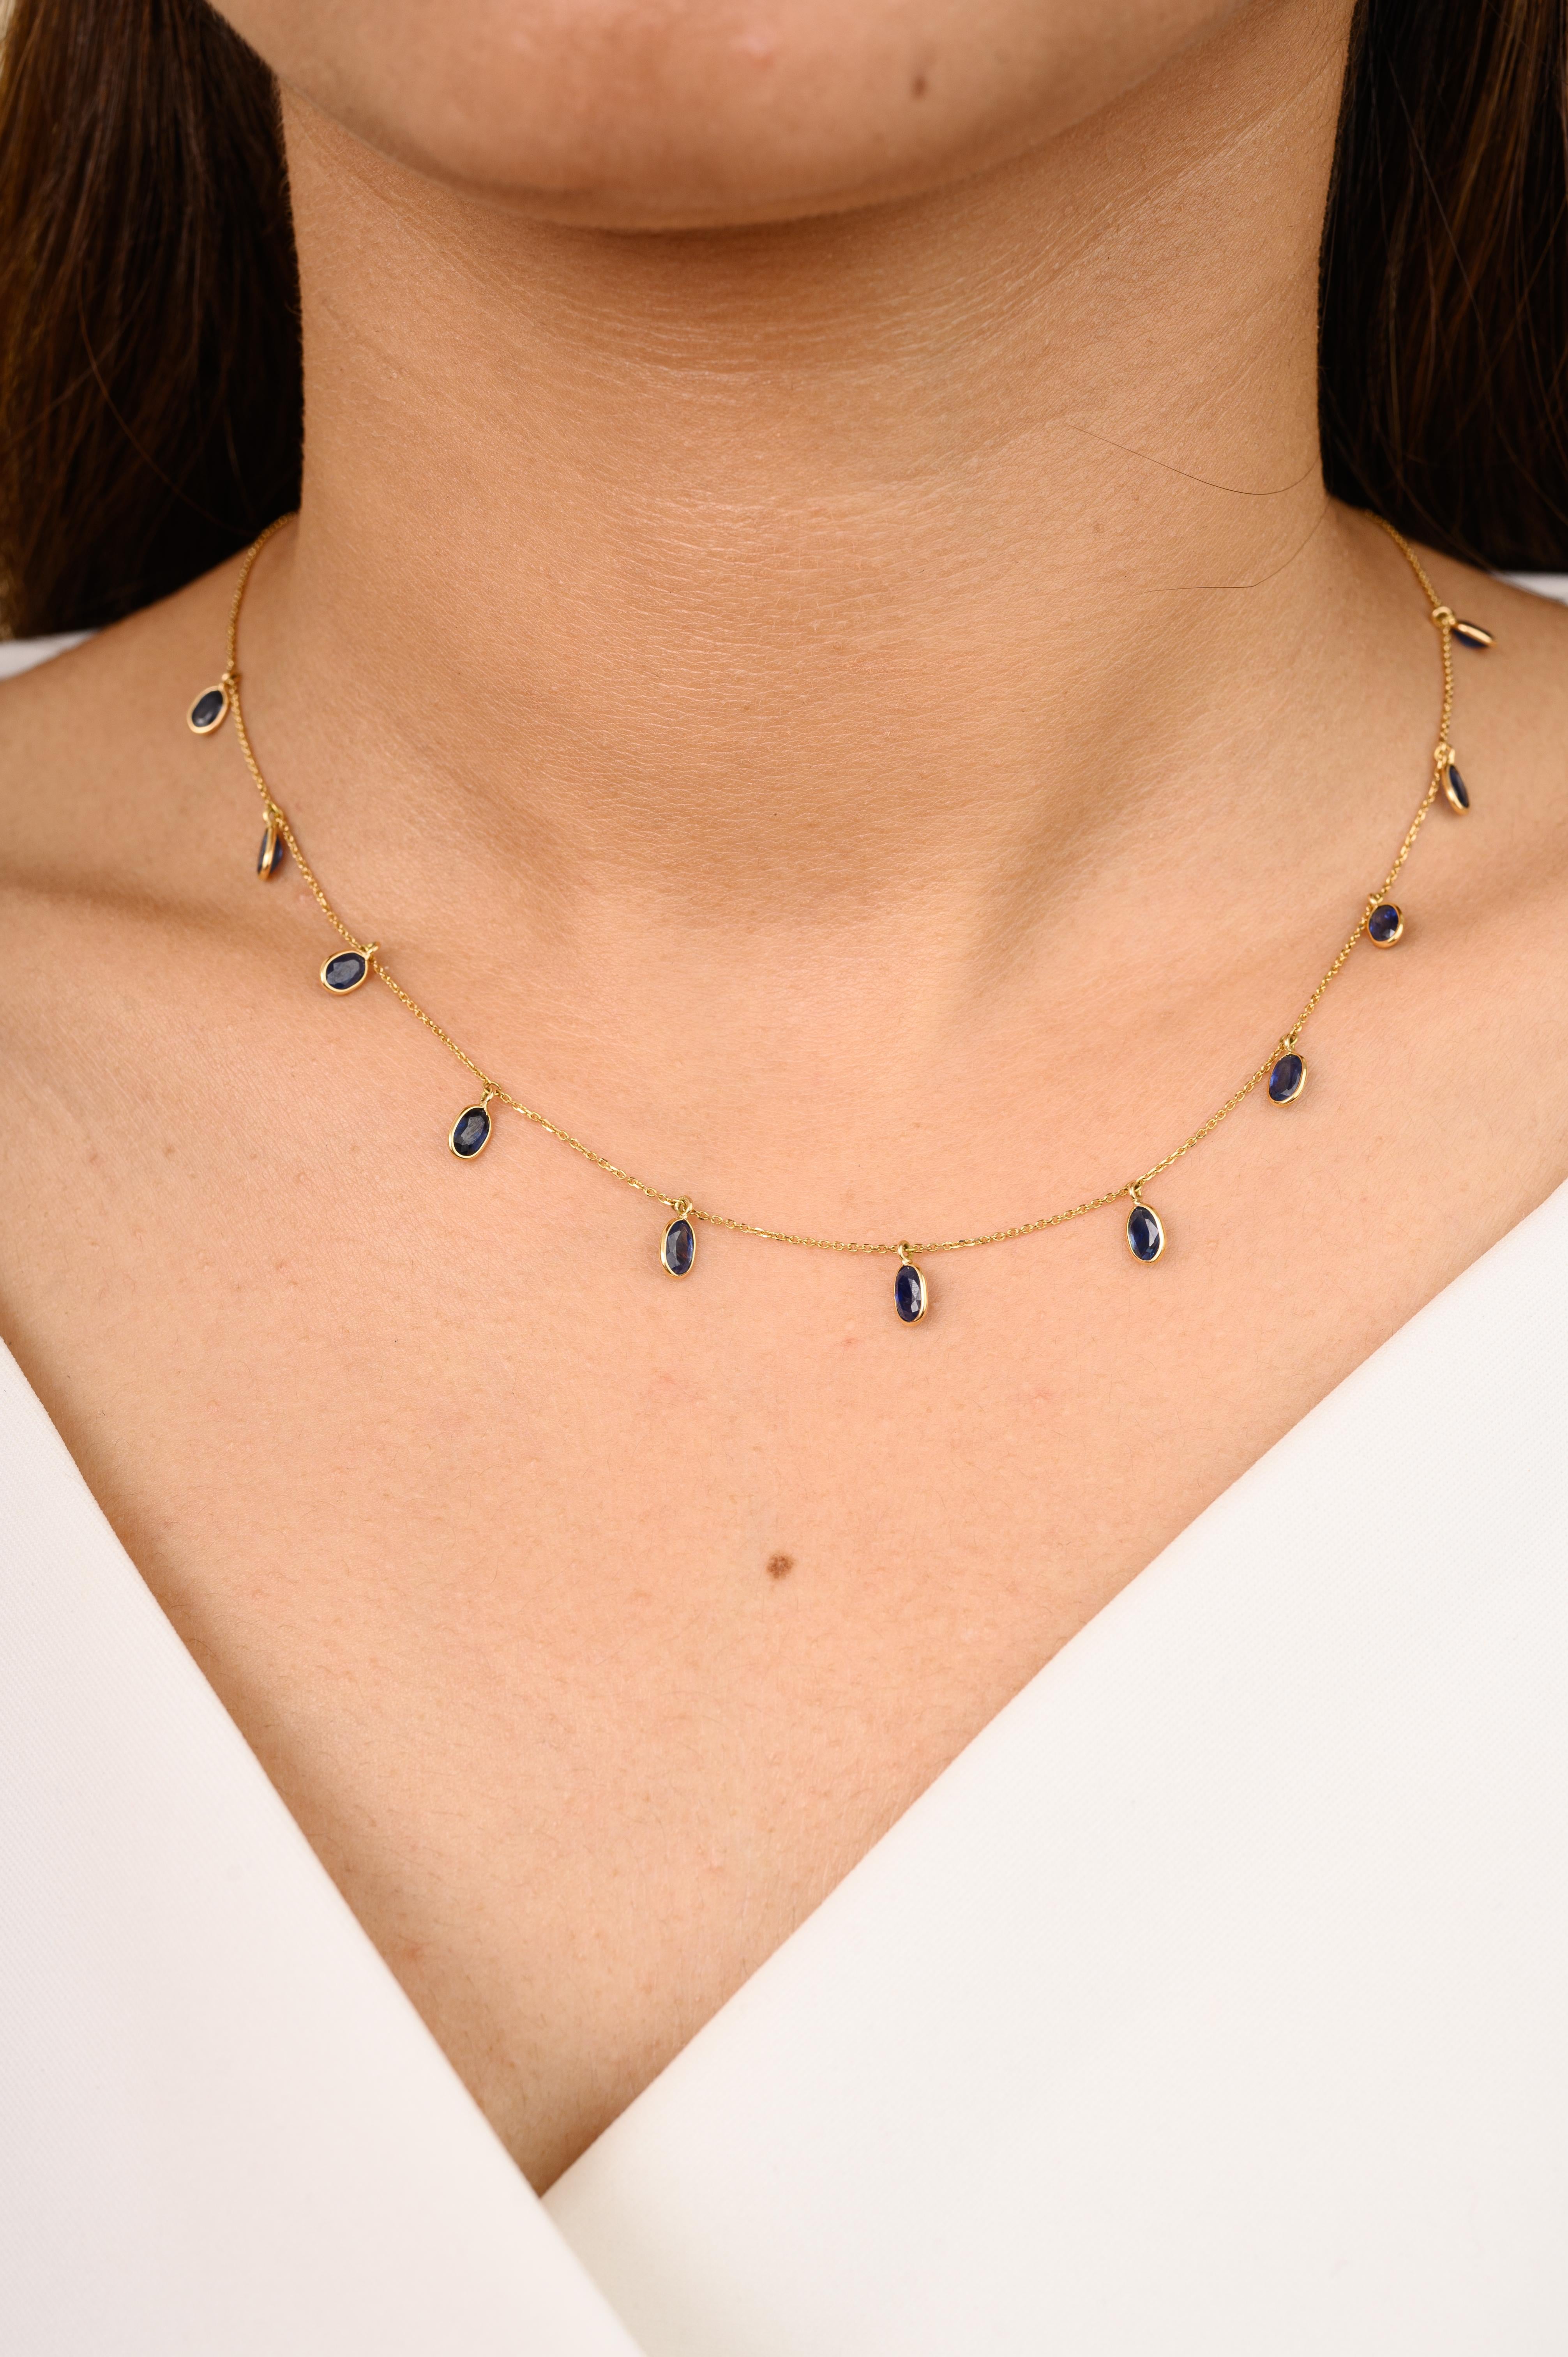 Minimalistisches Collier mit blauem Saphir-Charme aus 18 Karat Gold, besetzt mit einem blauen Saphir im Ovalschliff. Dieses atemberaubende Schmuckstück wertet einen Freizeitlook oder ein elegantes Outfit sofort auf. 
Der Saphir fördert die